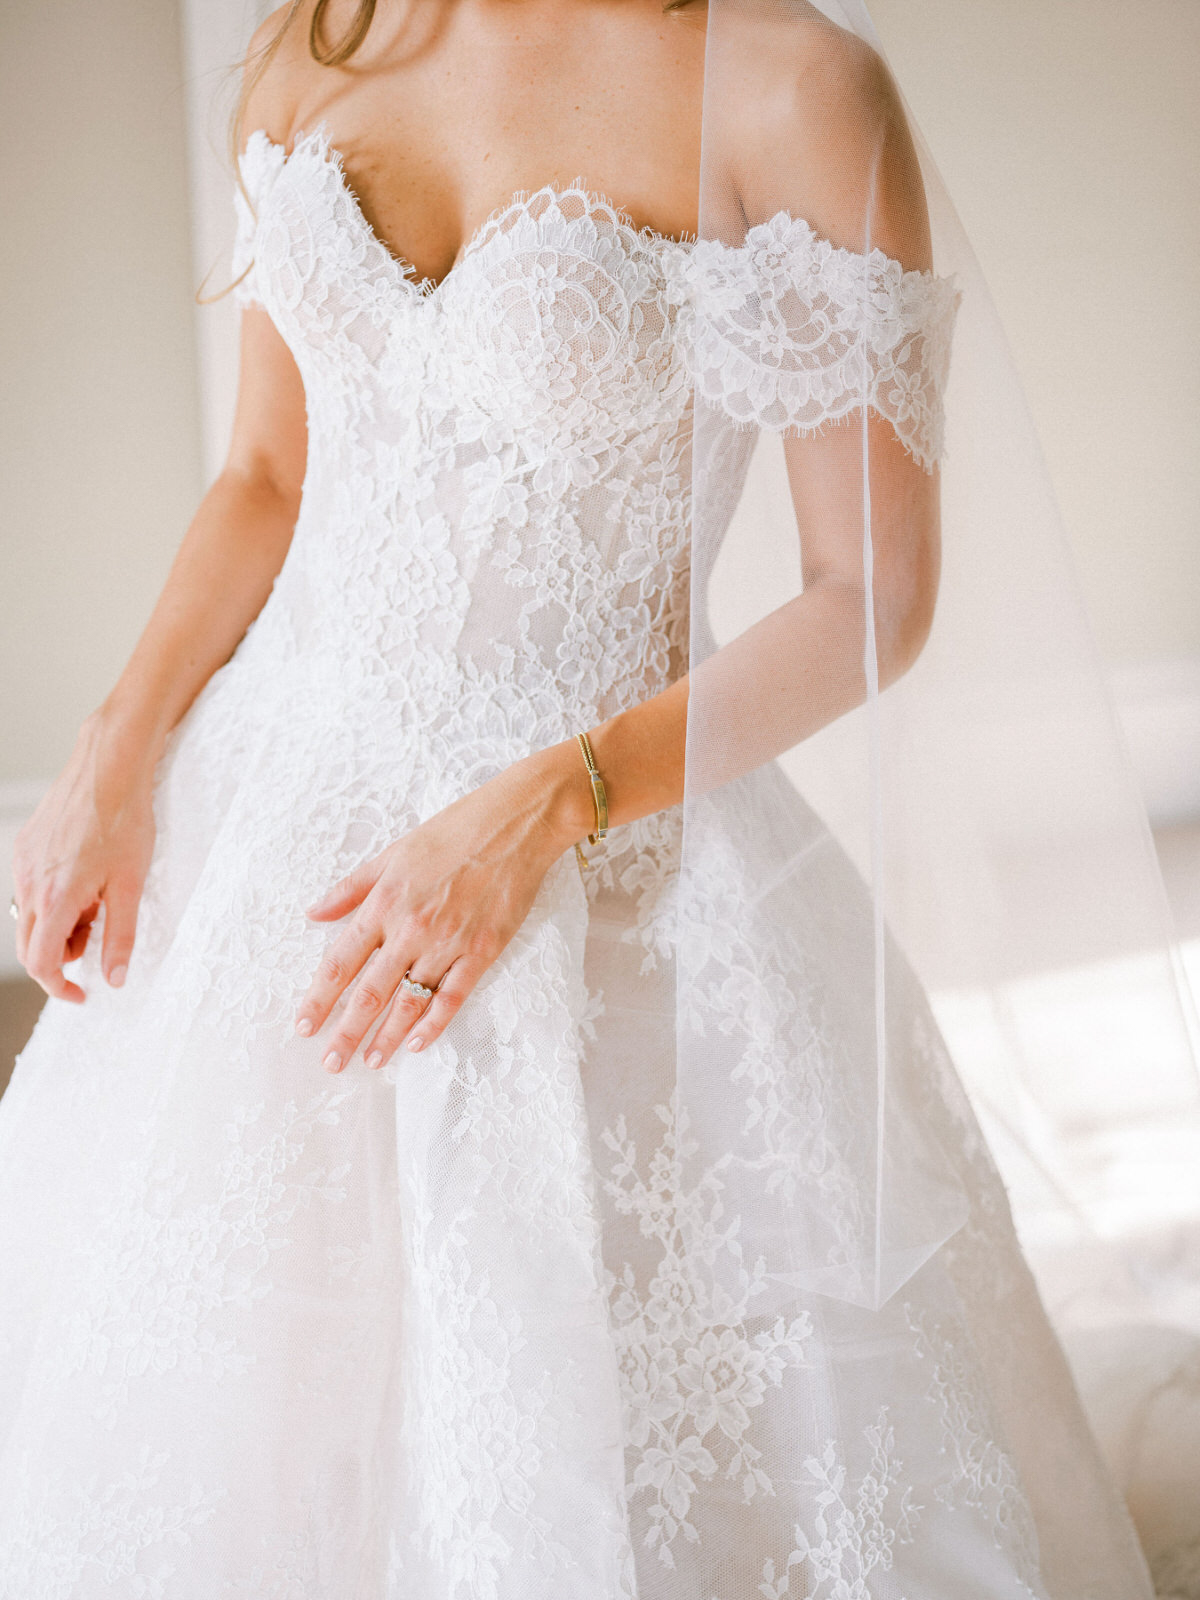 Monique Lhuillier wedding dress